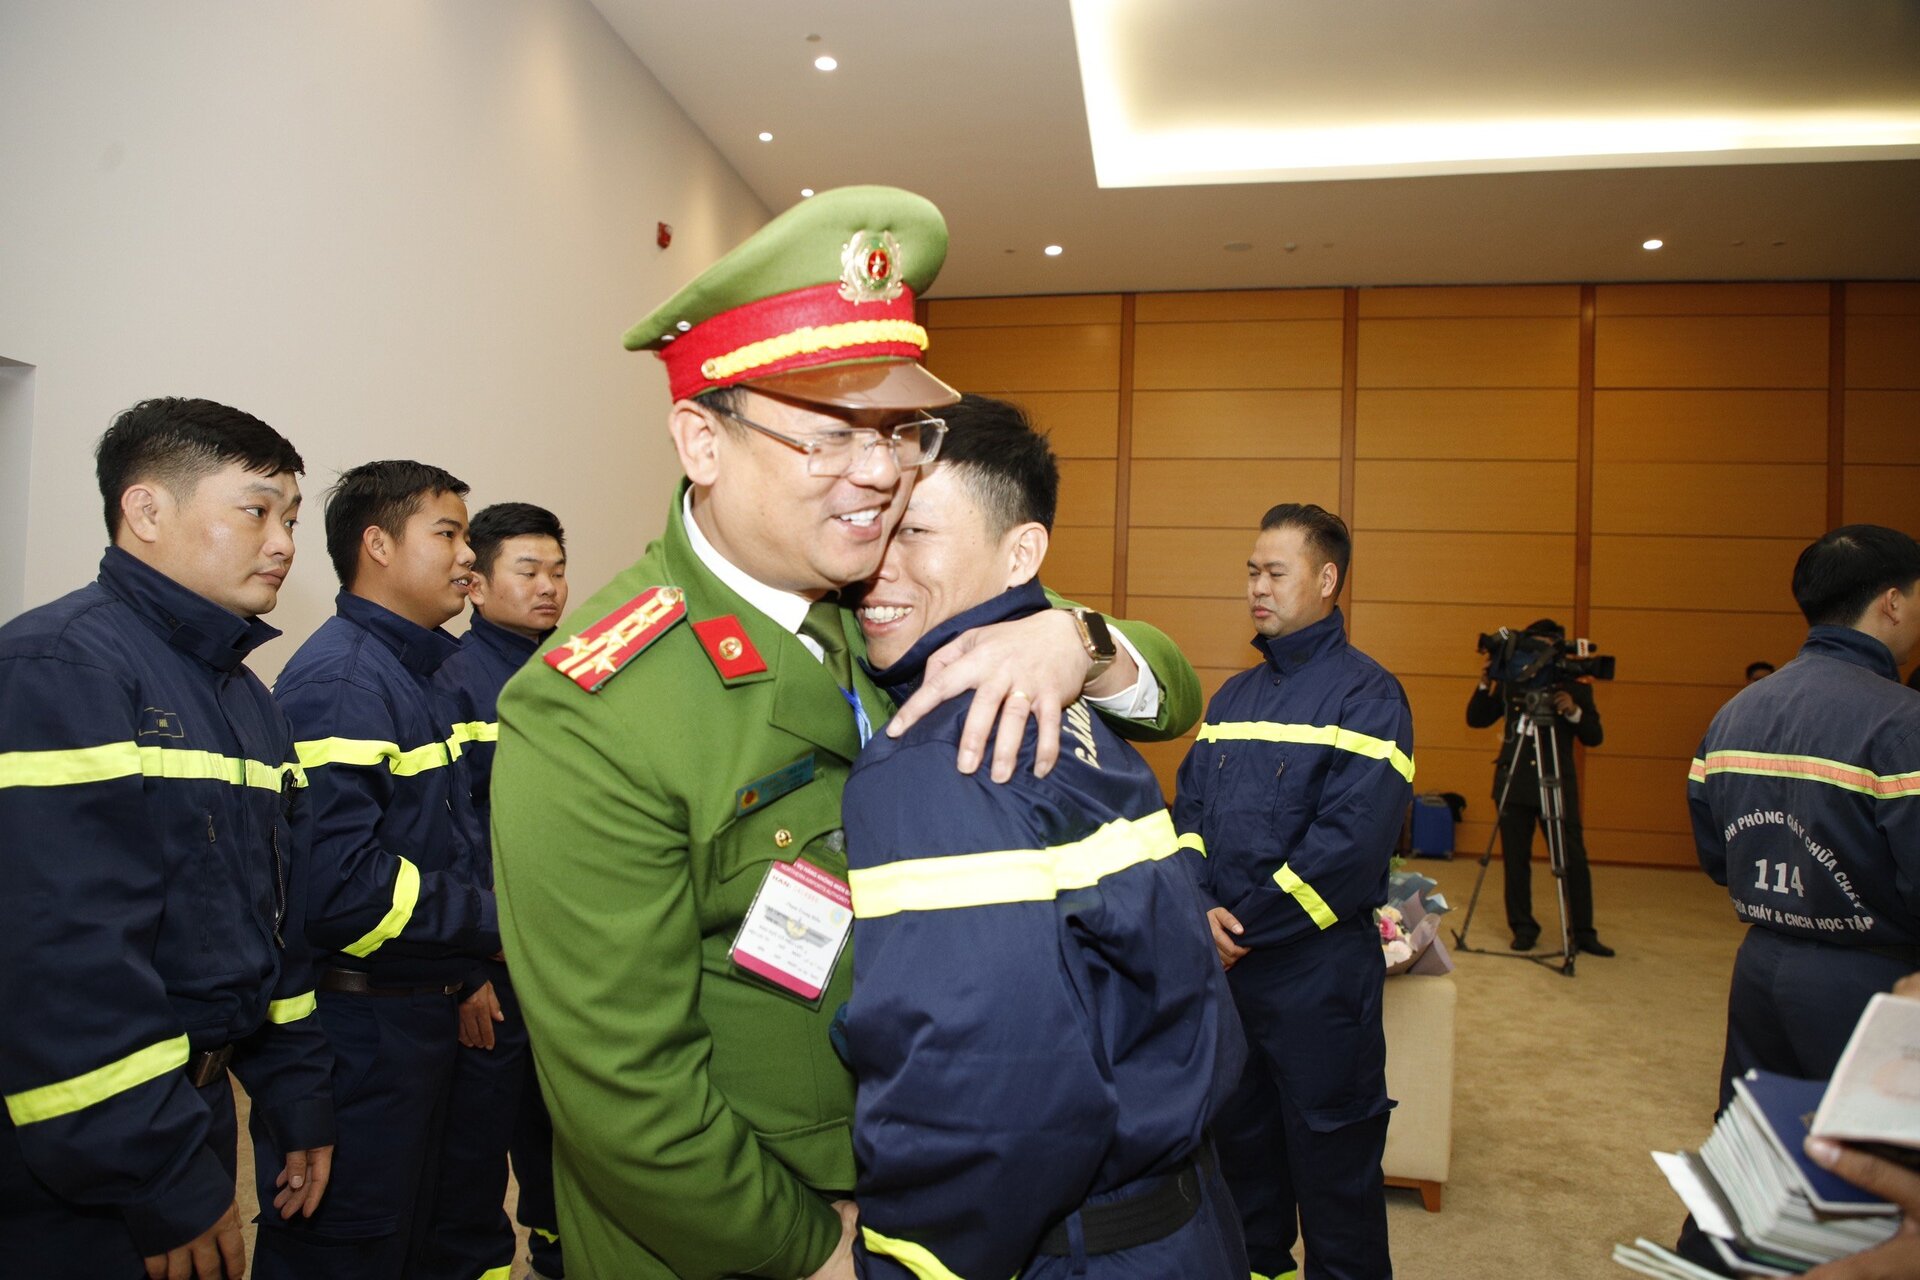 Đại tá Phạm Trung Hiếu - Trưởng phòng Cảnh sát PCCC&CNCH vui mừng khi đón CBCS thuộc đơn vị hoàn thành xuất sắc nhiệm vụ trở về